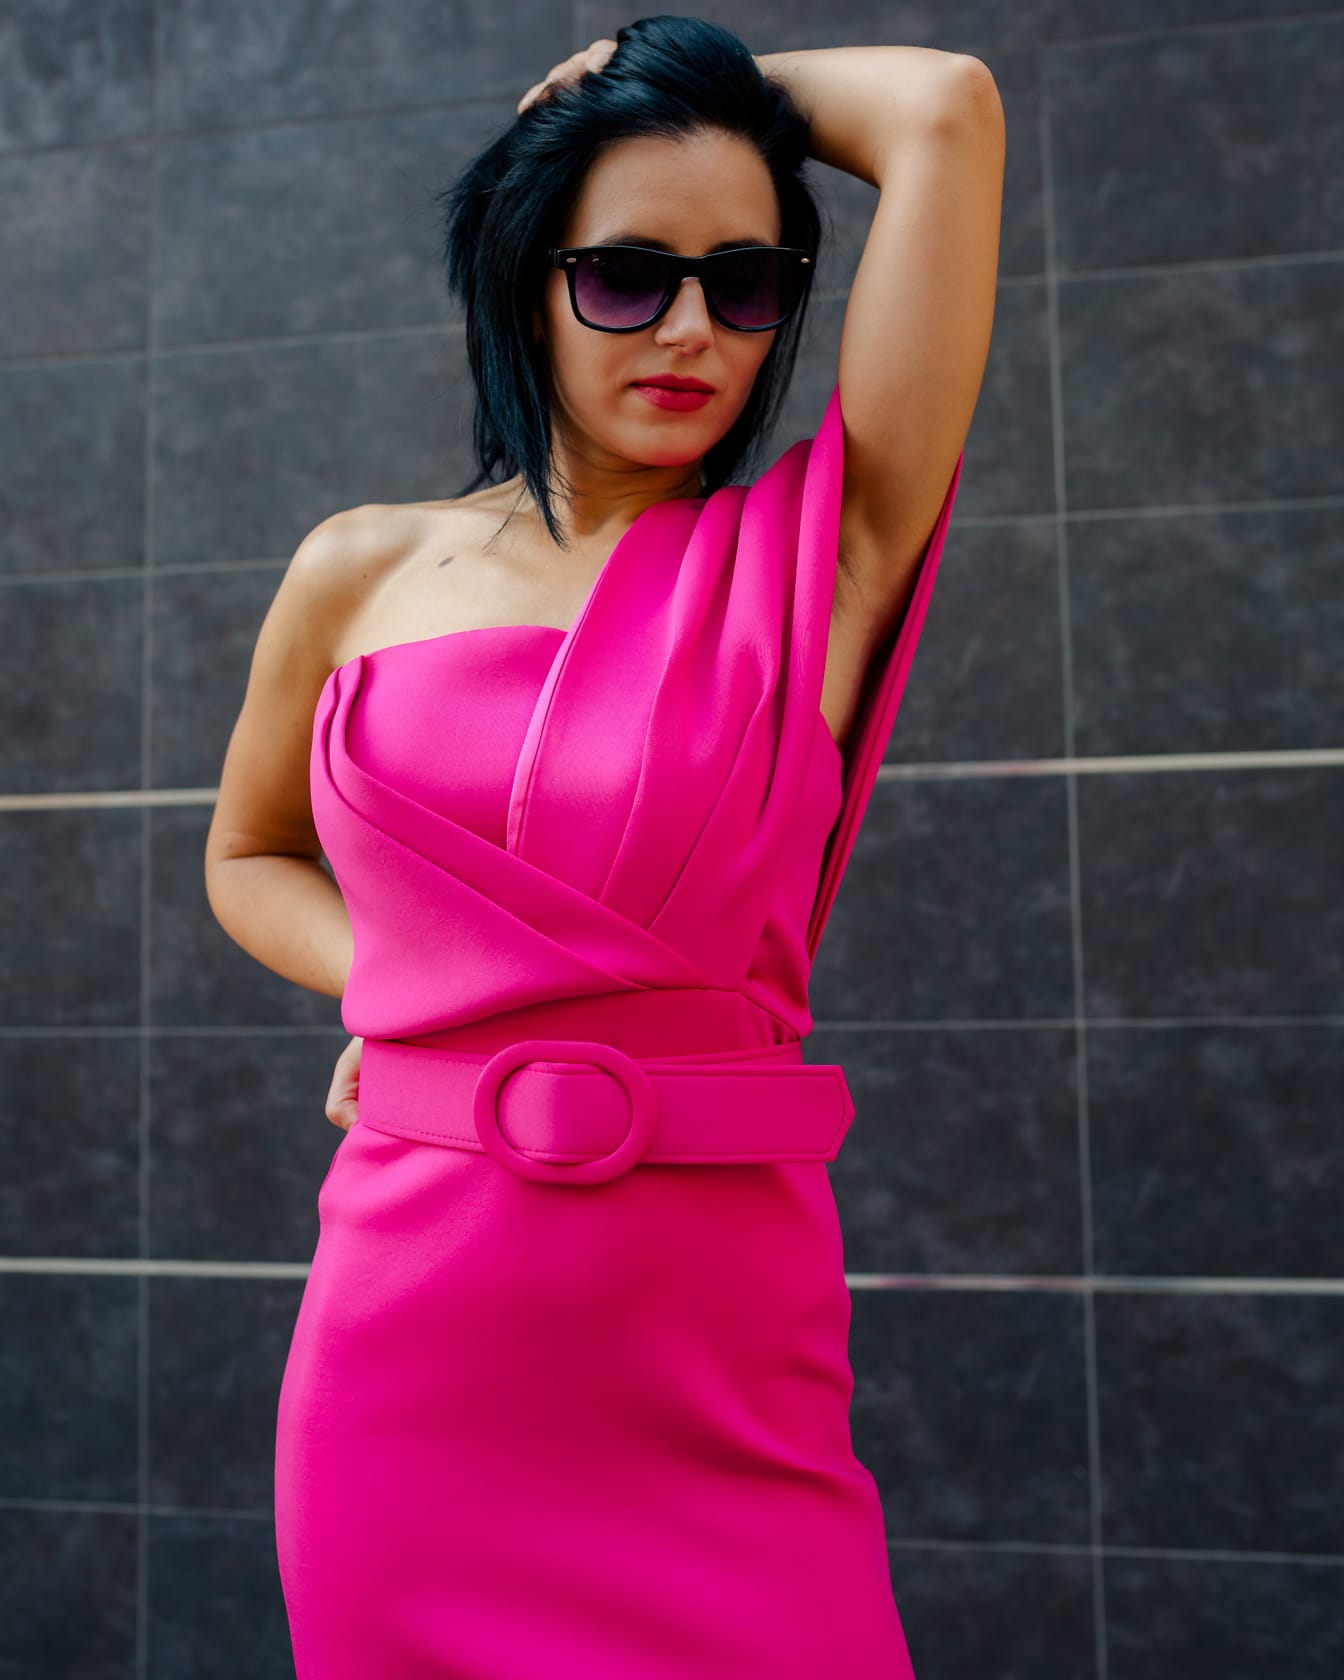 Nữ doanh nhân xinh đẹp lộng lẫy tạo dáng quyến rũ với bàn tay trên tóc trong chiếc váy hồng mới thời trang